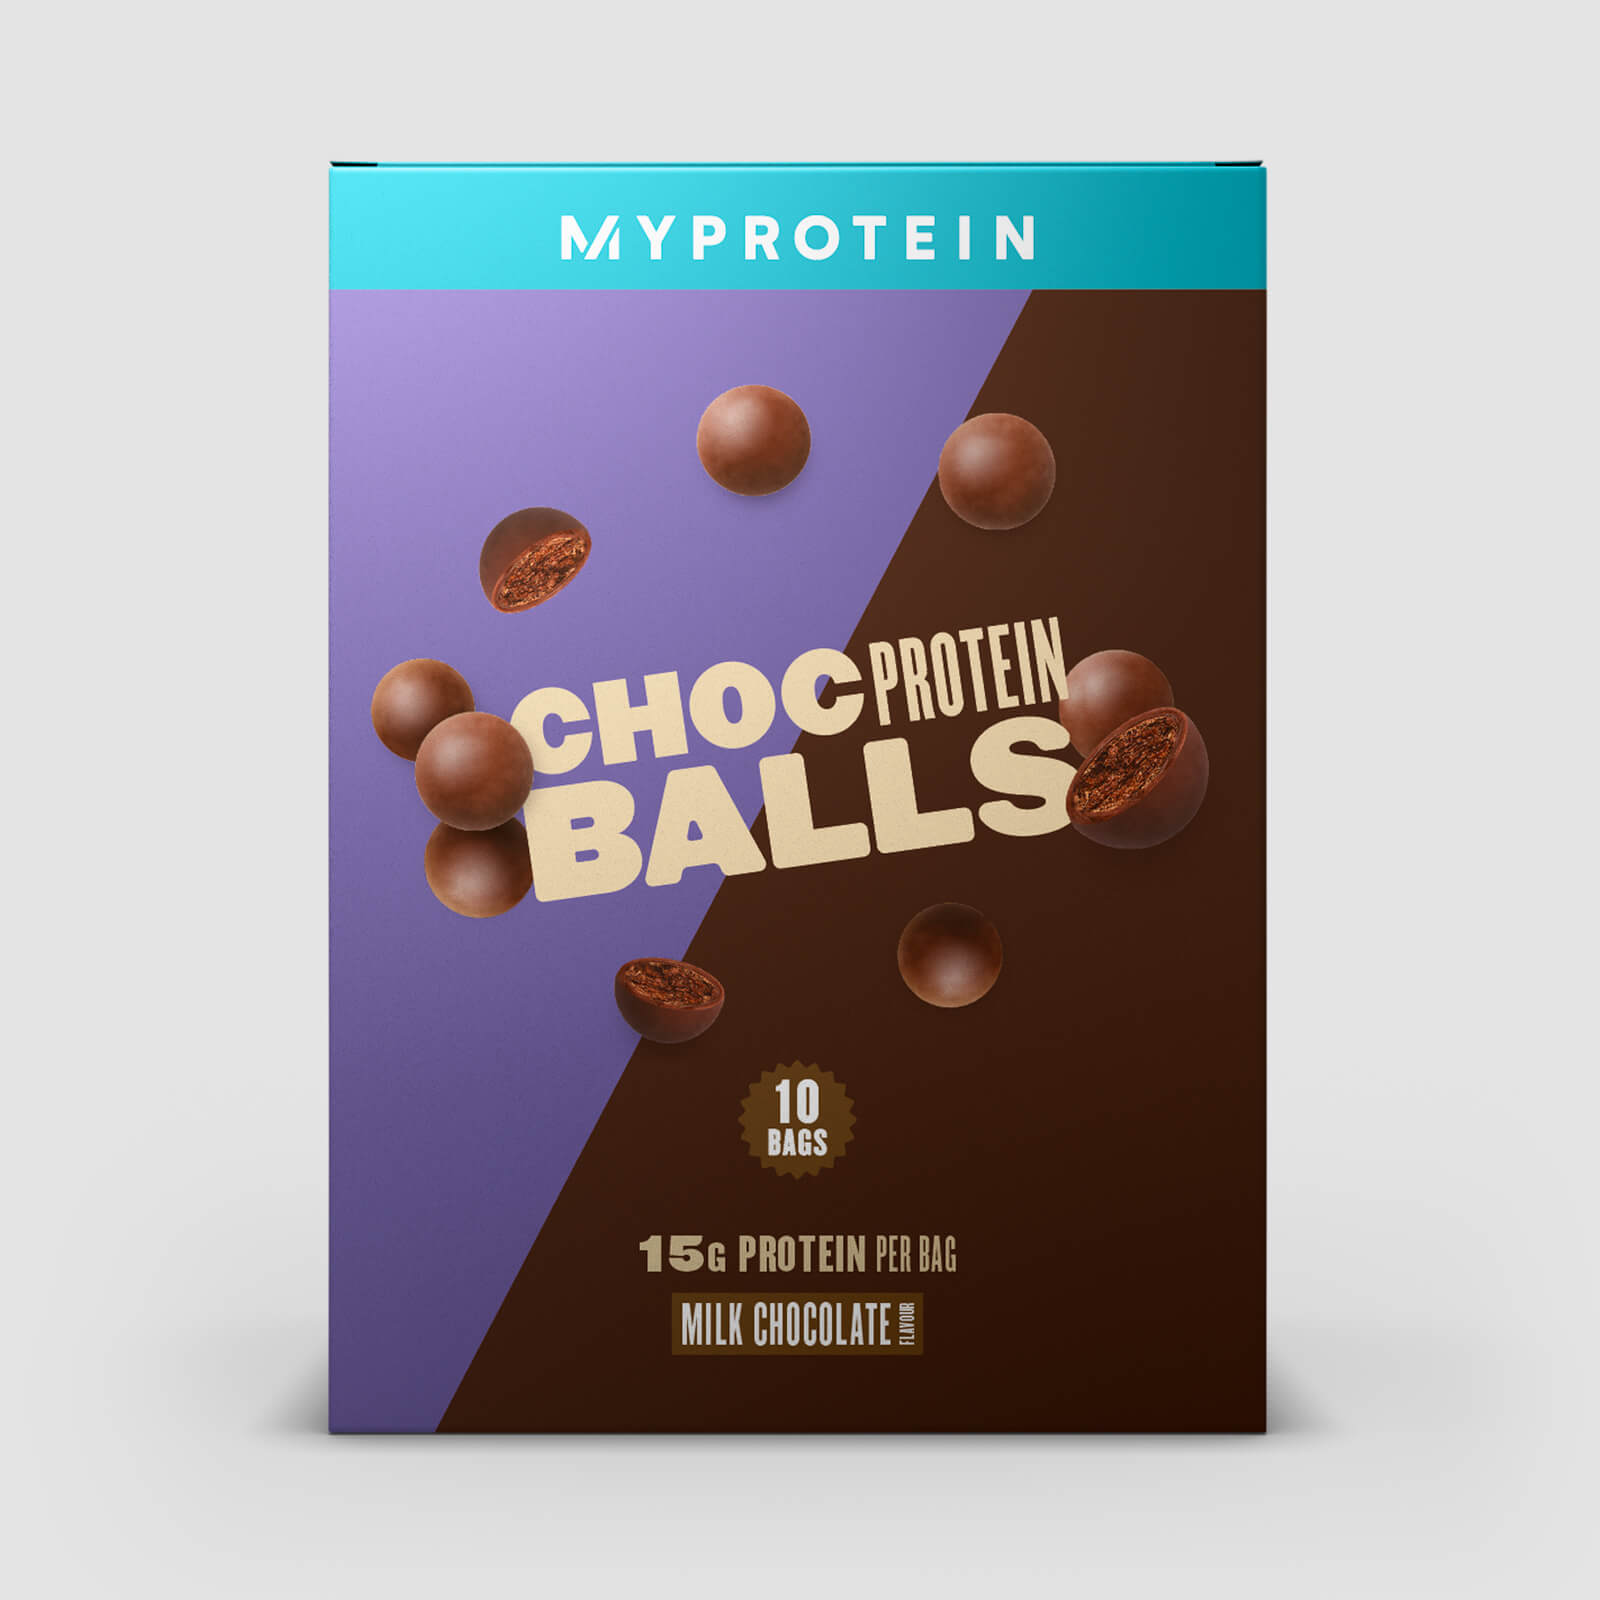 Myprotein Choc Protein Balls - 10x35g - Schokolade